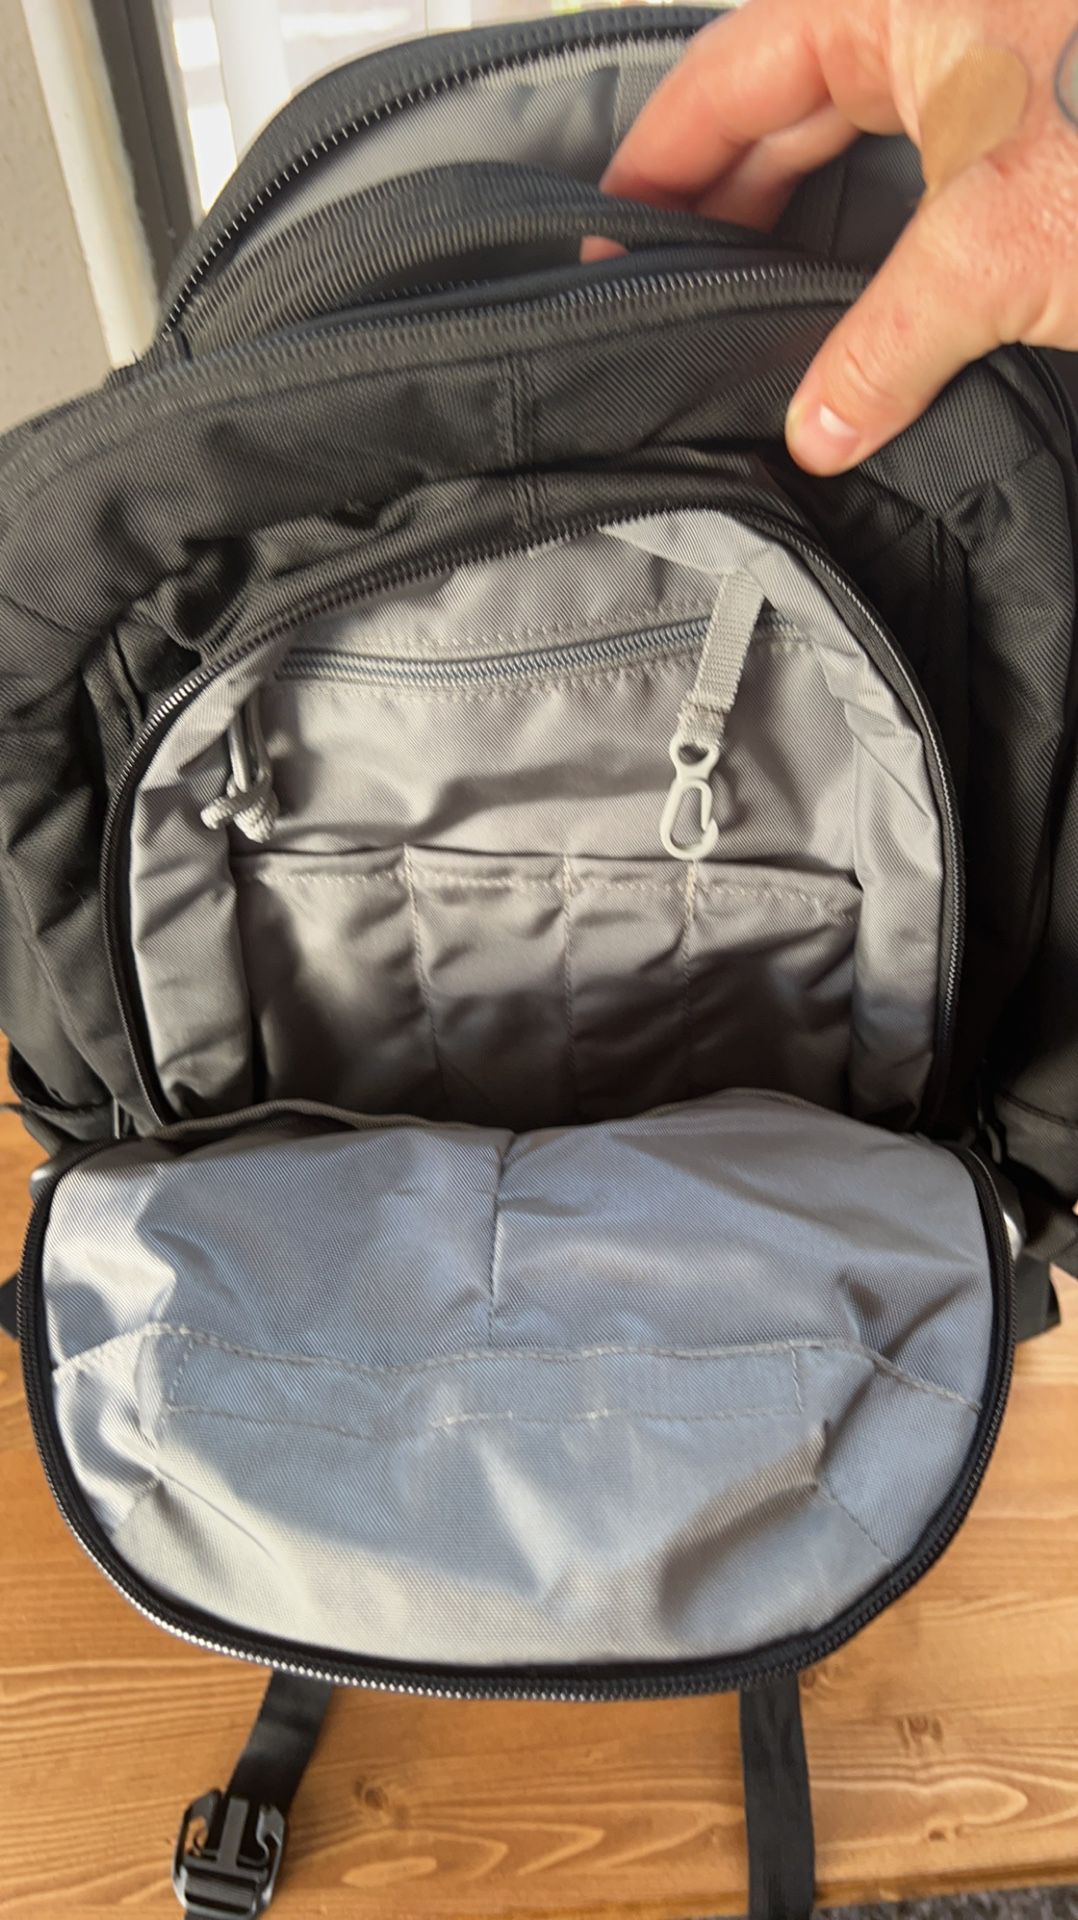 5.11 LV18: A low vis 30-liter backpack 